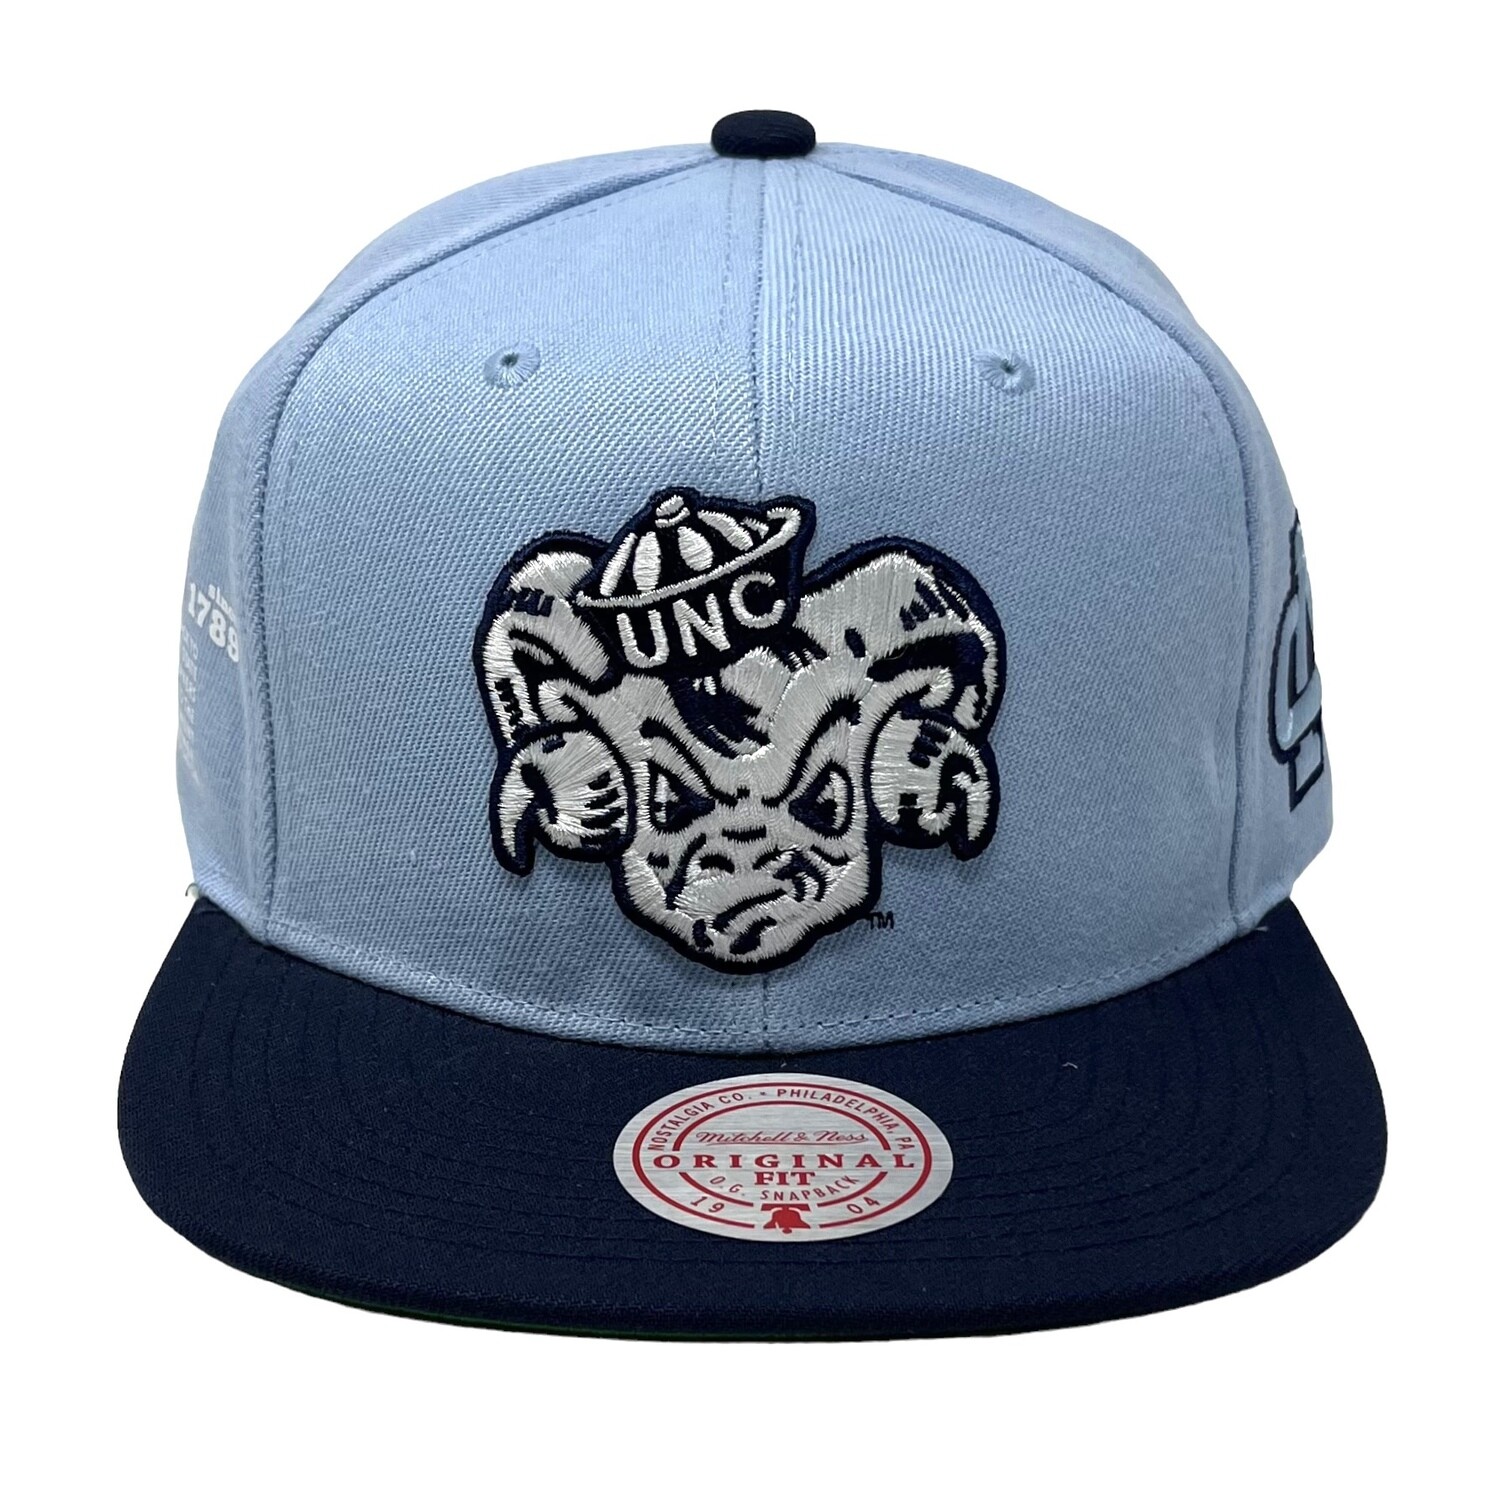 North Carolina Tar Heels Team Origins Snapback Hat